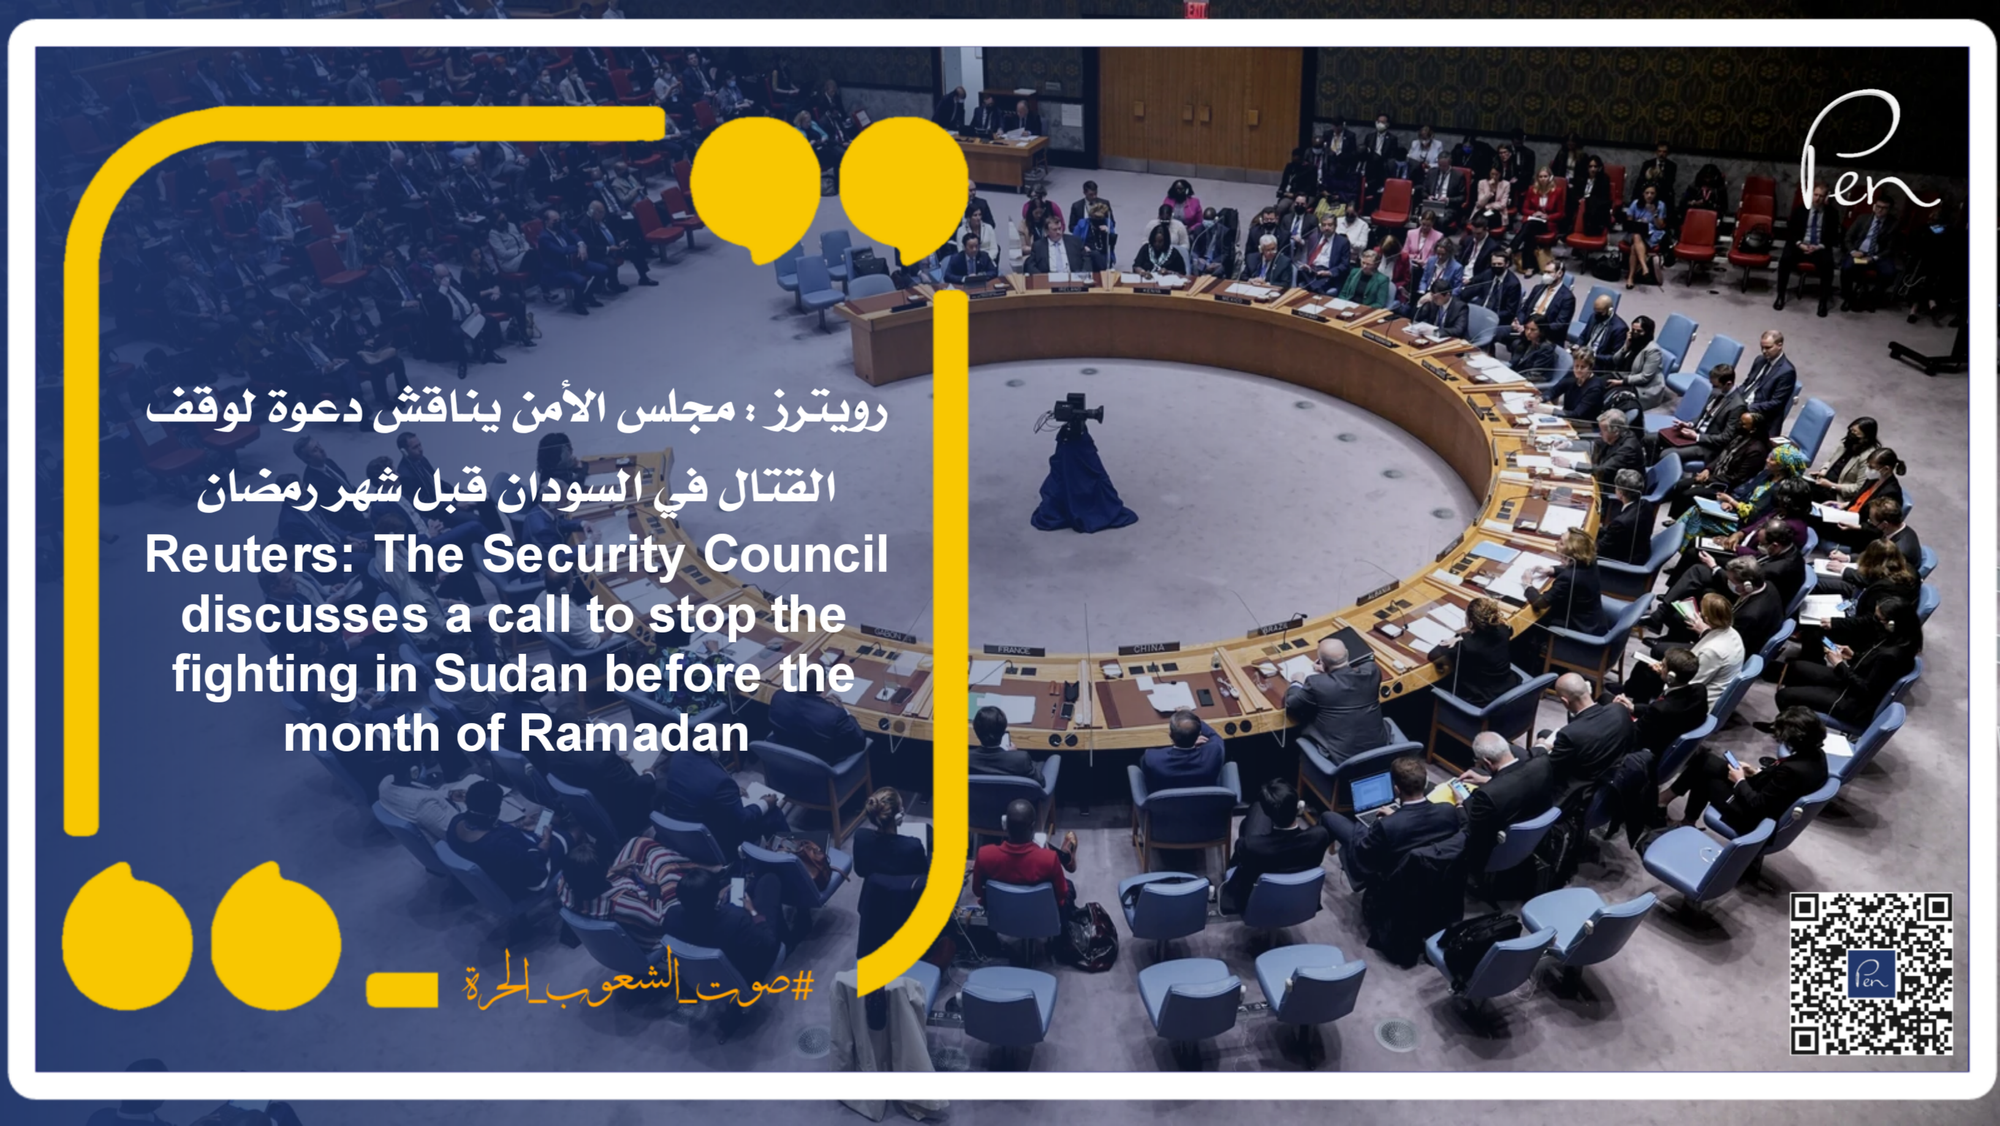 رويترز : مجلس الأمن يناقش دعوة لوقف القتال في السودان قبل شهر رمضان